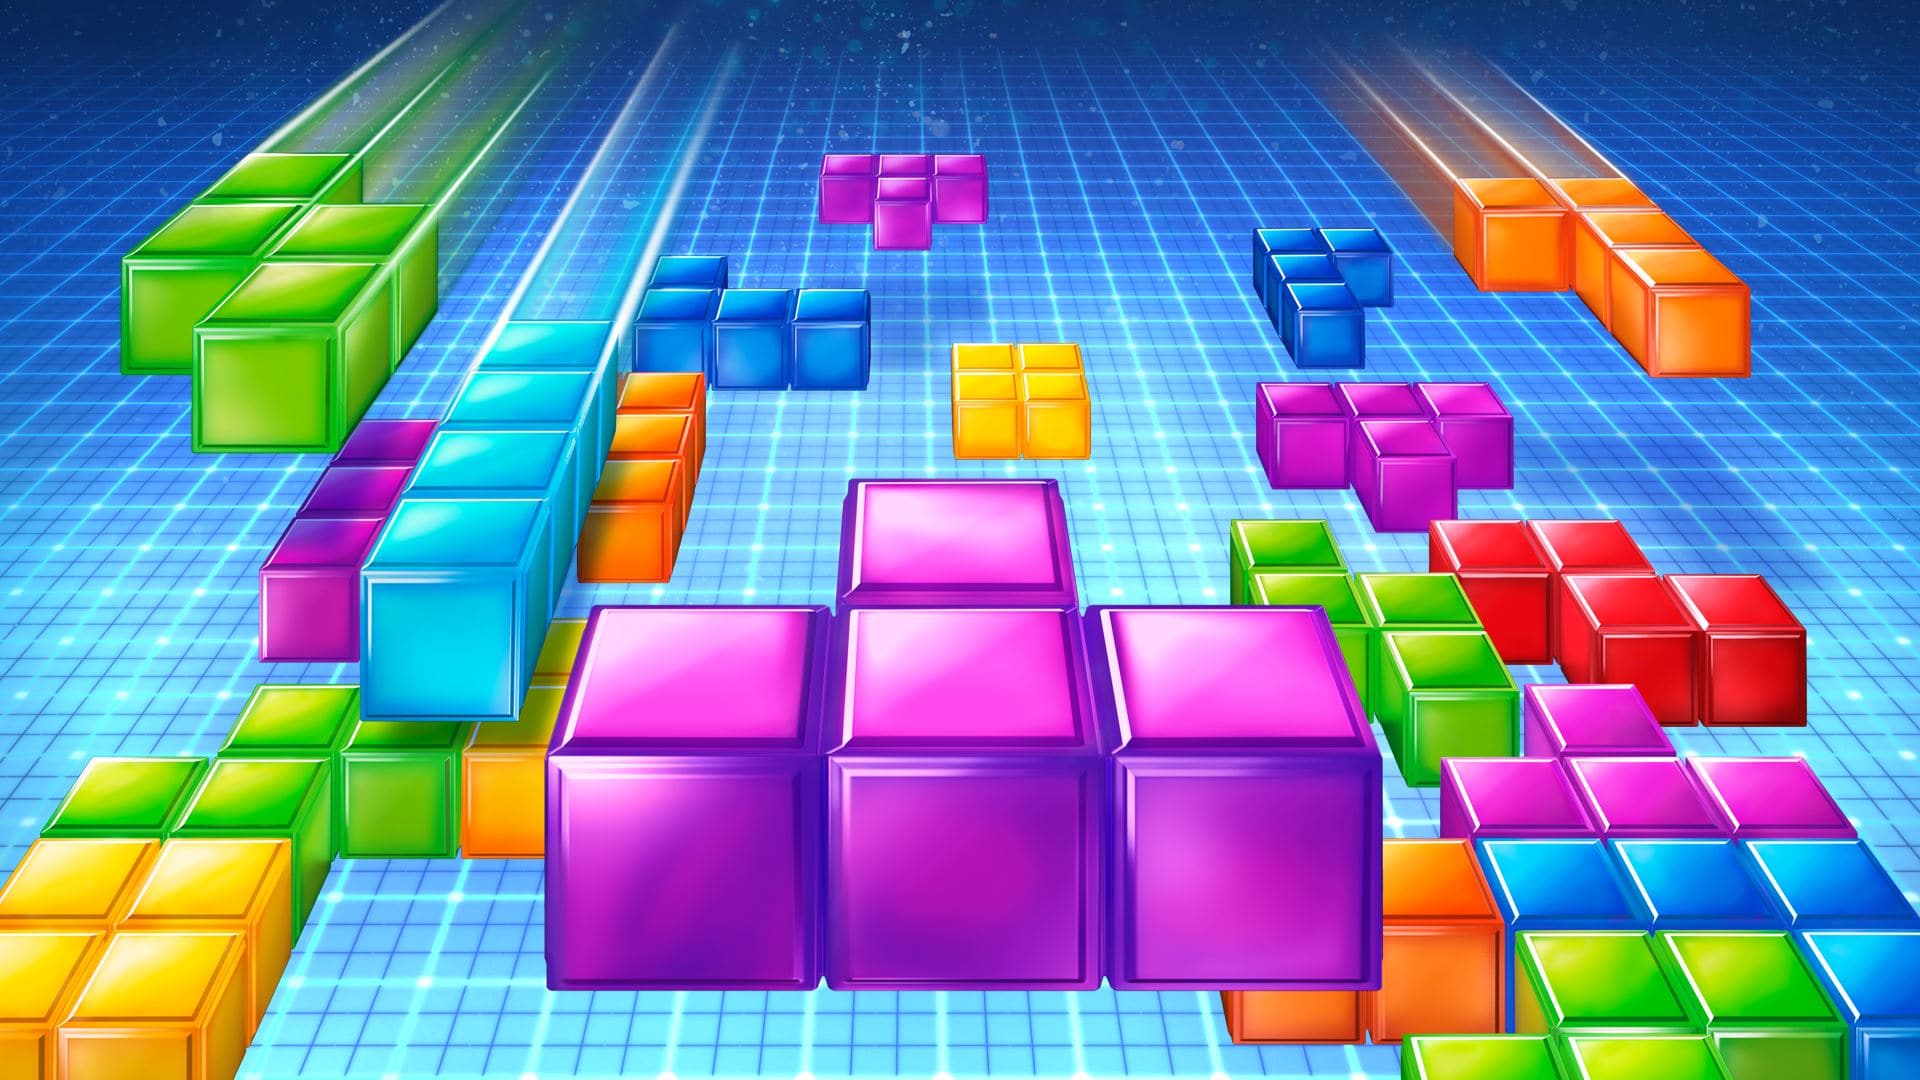 tetris all games